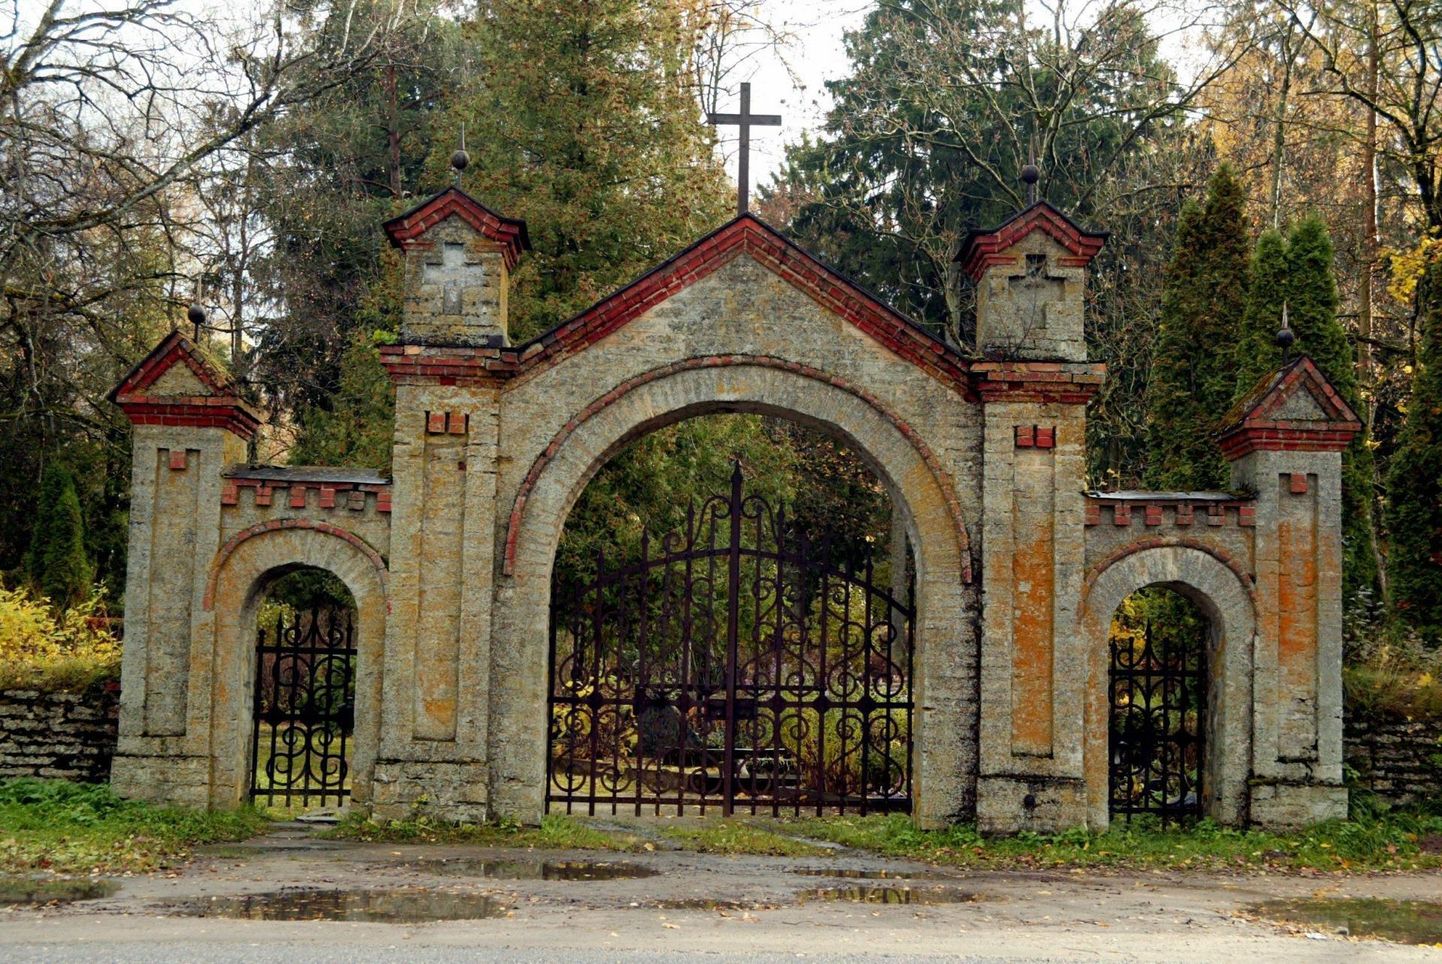 Tõrma kalmistut haldab Rakvere vald, kuid osa kalmistuga seotud aladest kuuluvad Rakvere linna haldusalasse. Vald tegi ettepanku maadevahetuseks, et kalmistu kuuluks tervenisti vallale ja nõnda oleks võimalik korraldada sealseid arendusi.